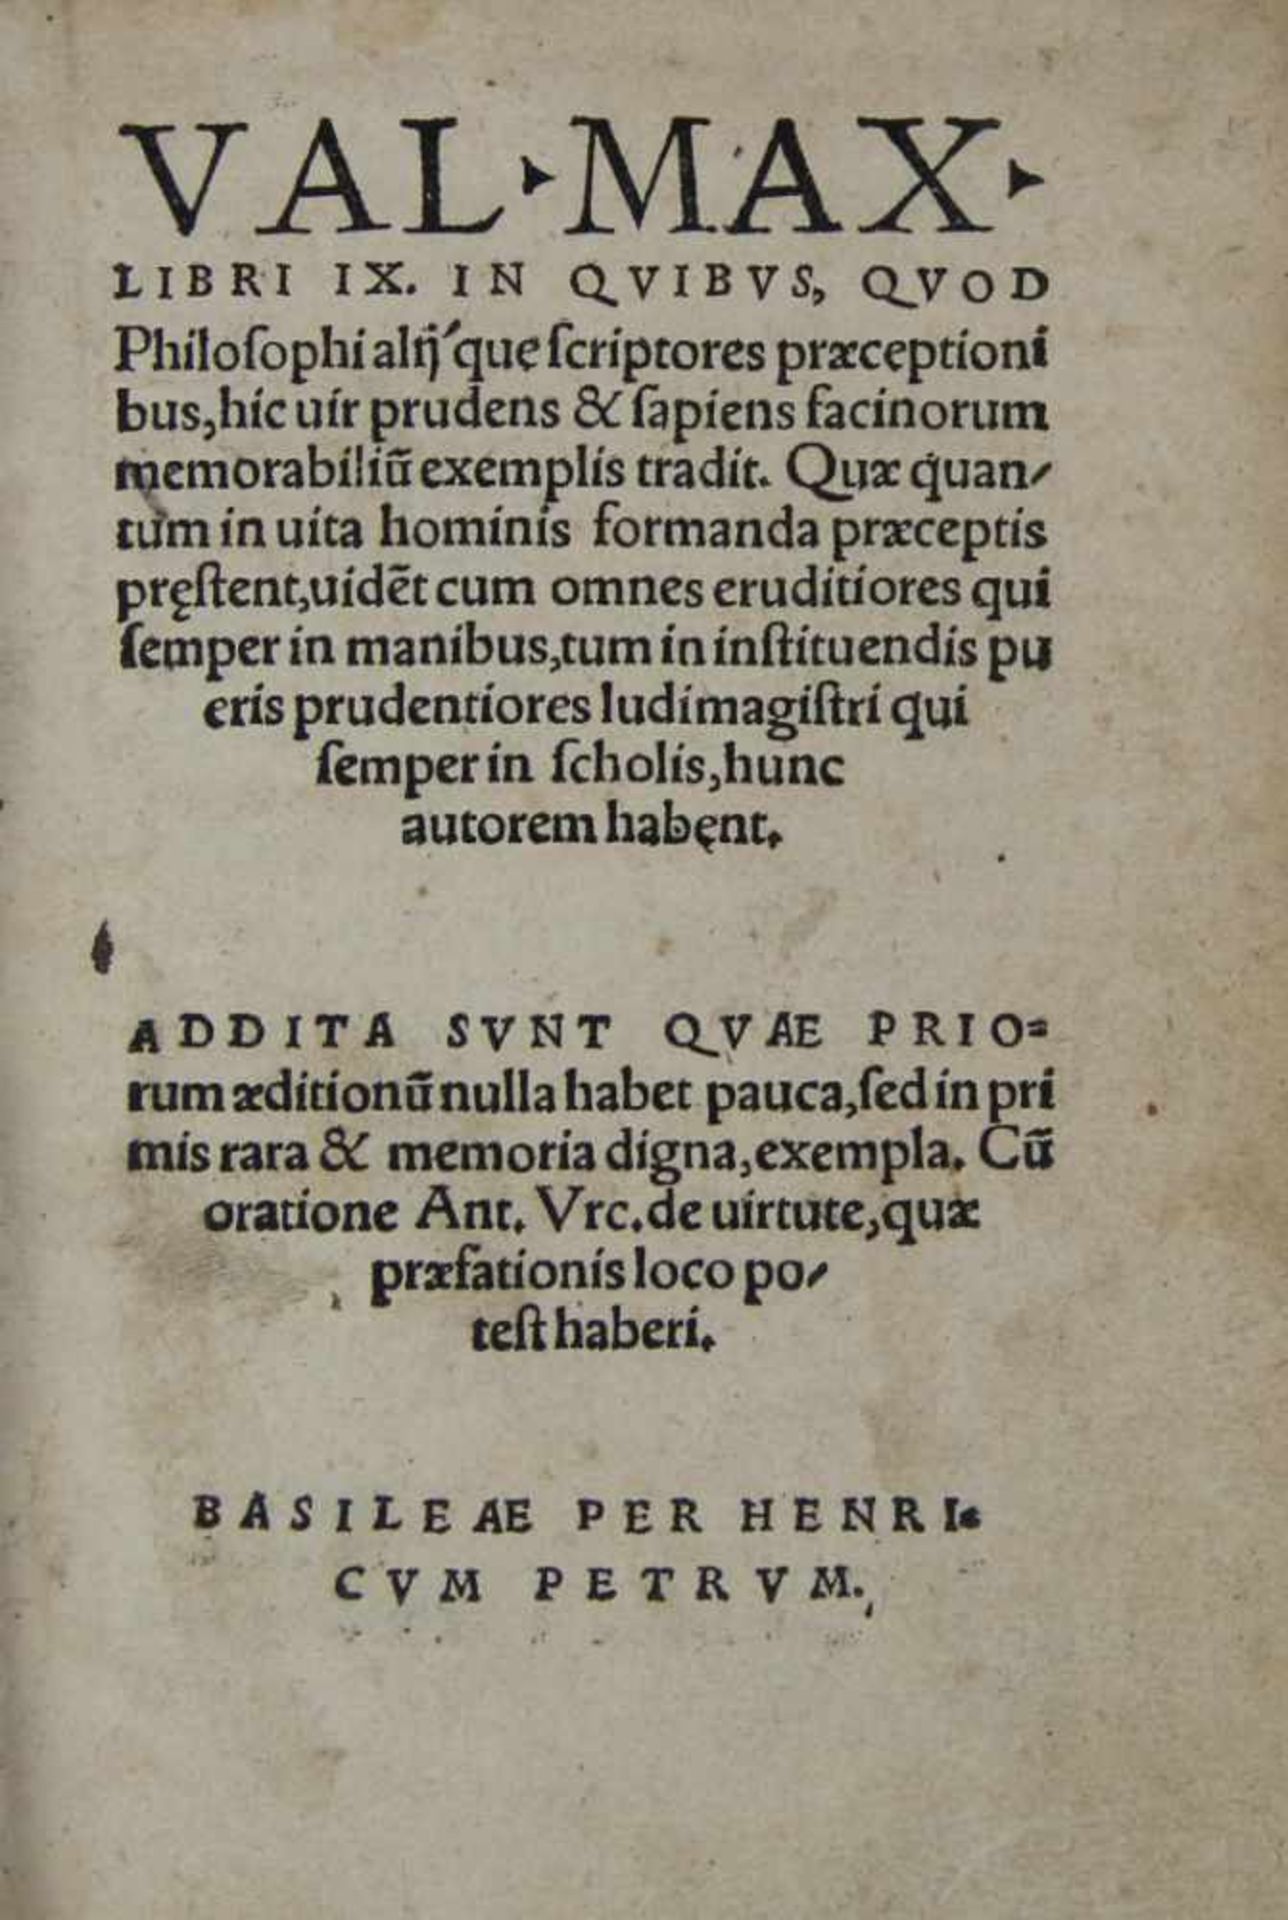 Valerius Maximus:Libri IX. in quibus, quod philosophi alij'que scrptores praeceptionibus, hic uir